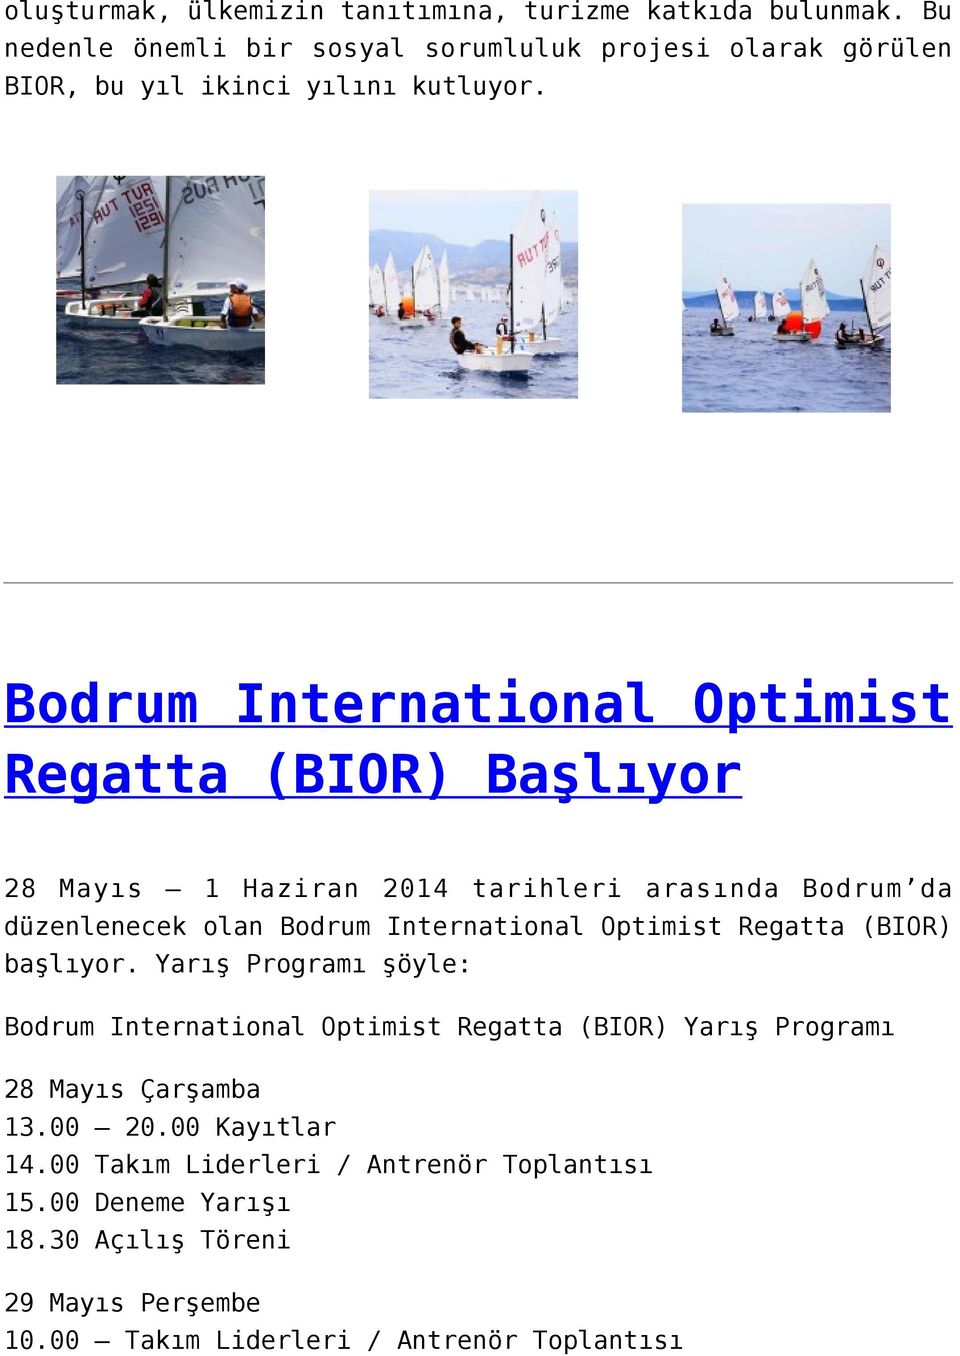 Bodrum International Optimist Regatta (BIOR) Başlıyor 28 Mayıs 1 Haziran 2014 tarihleri arasında Bodrum da düzenlenecek olan Bodrum International